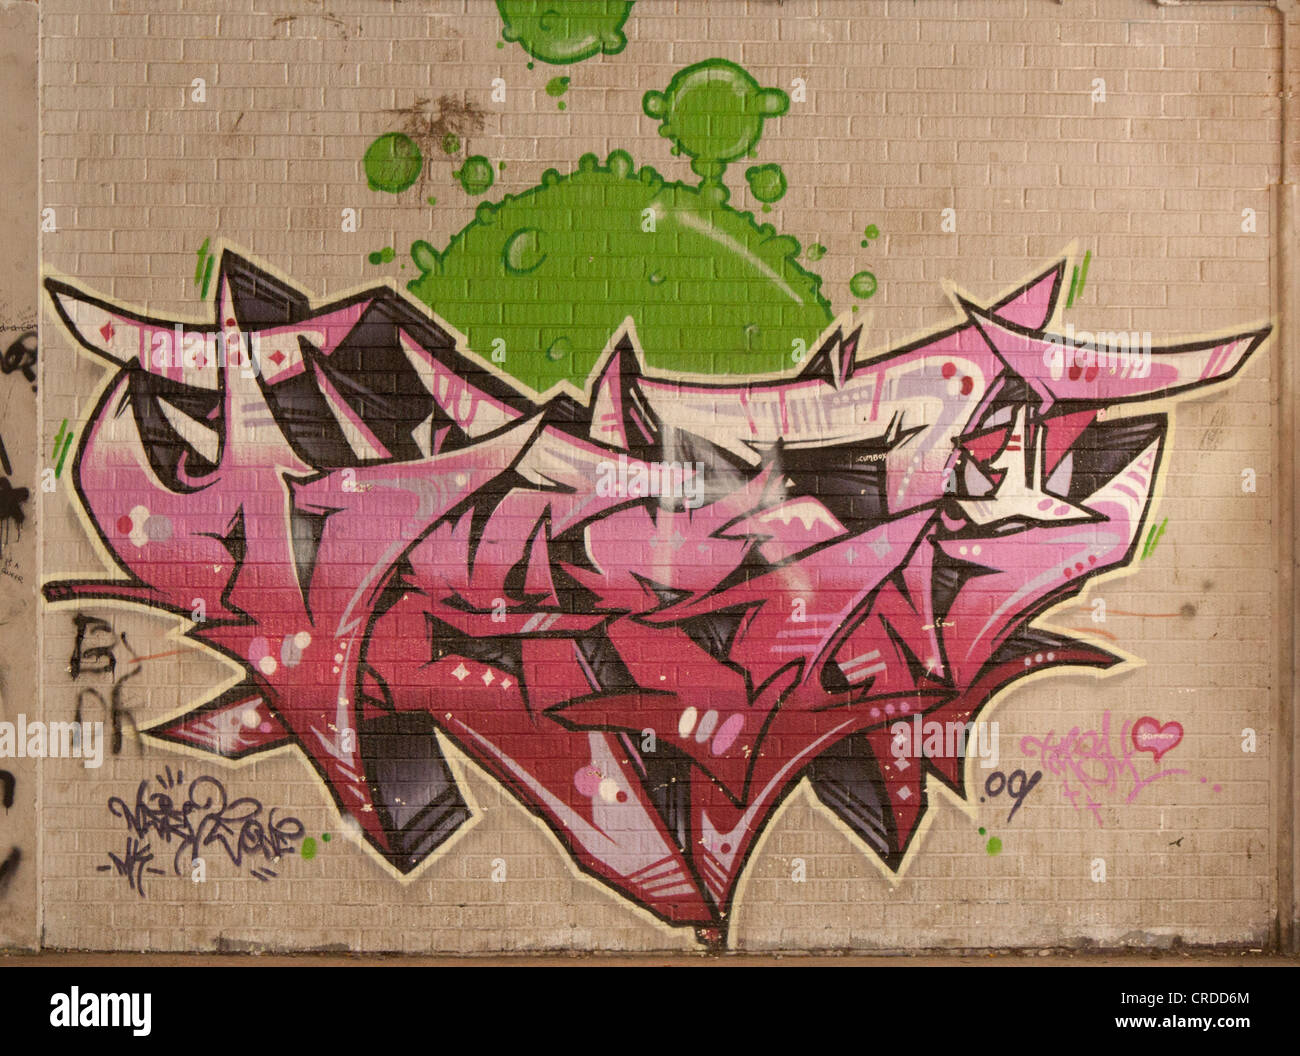 Graffiti-Wand Bridgend Kunst bunt Stockfoto